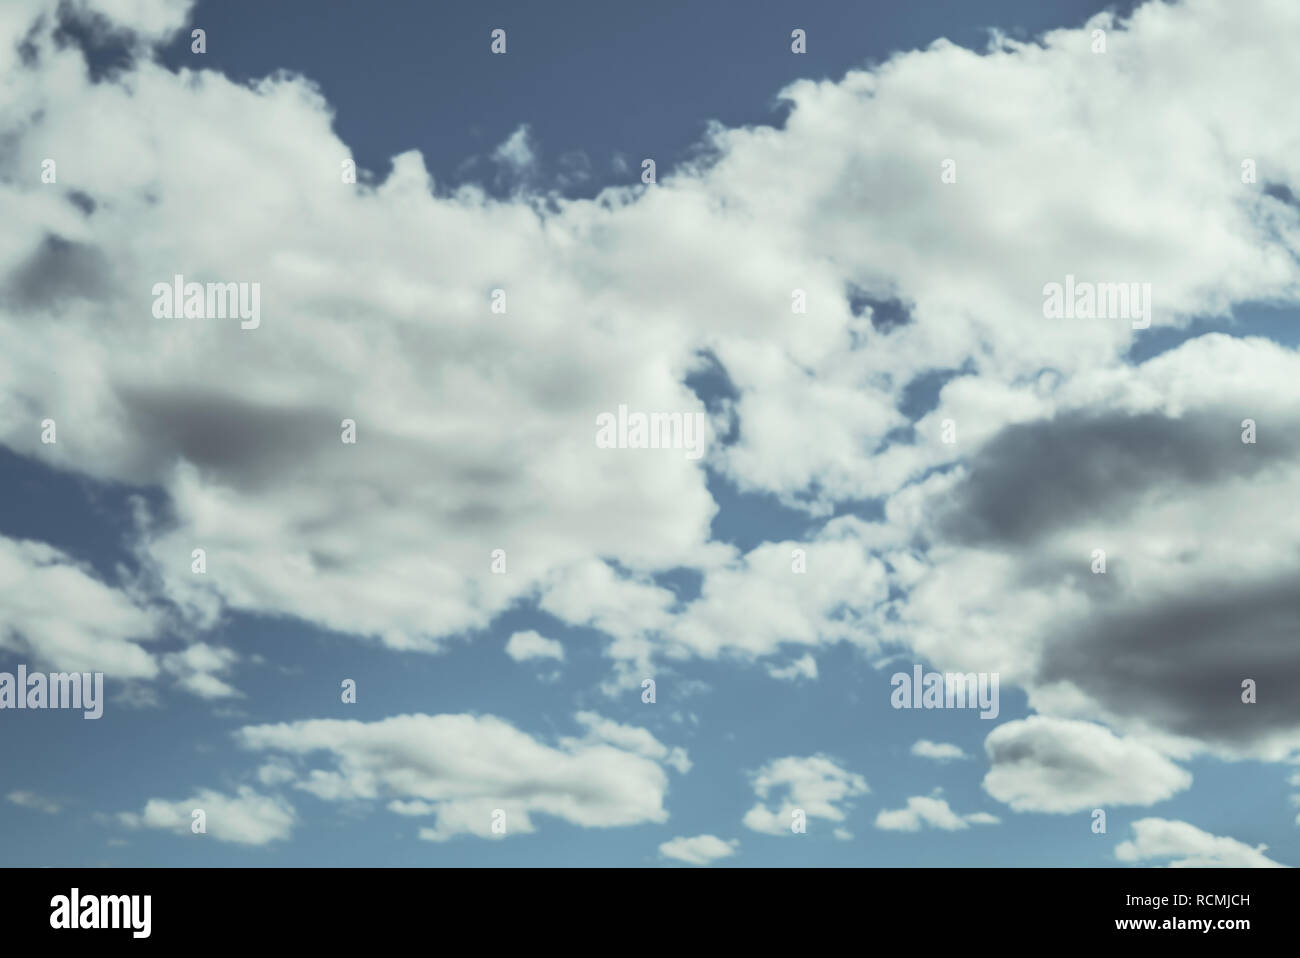 Auf der Suche nach einer blauen bewölkten Sommerhimmel mit flauschige, weiche, weiße Wolken - Begriff der Schwärmerei, Wetter oder Meteorologie Stockfoto